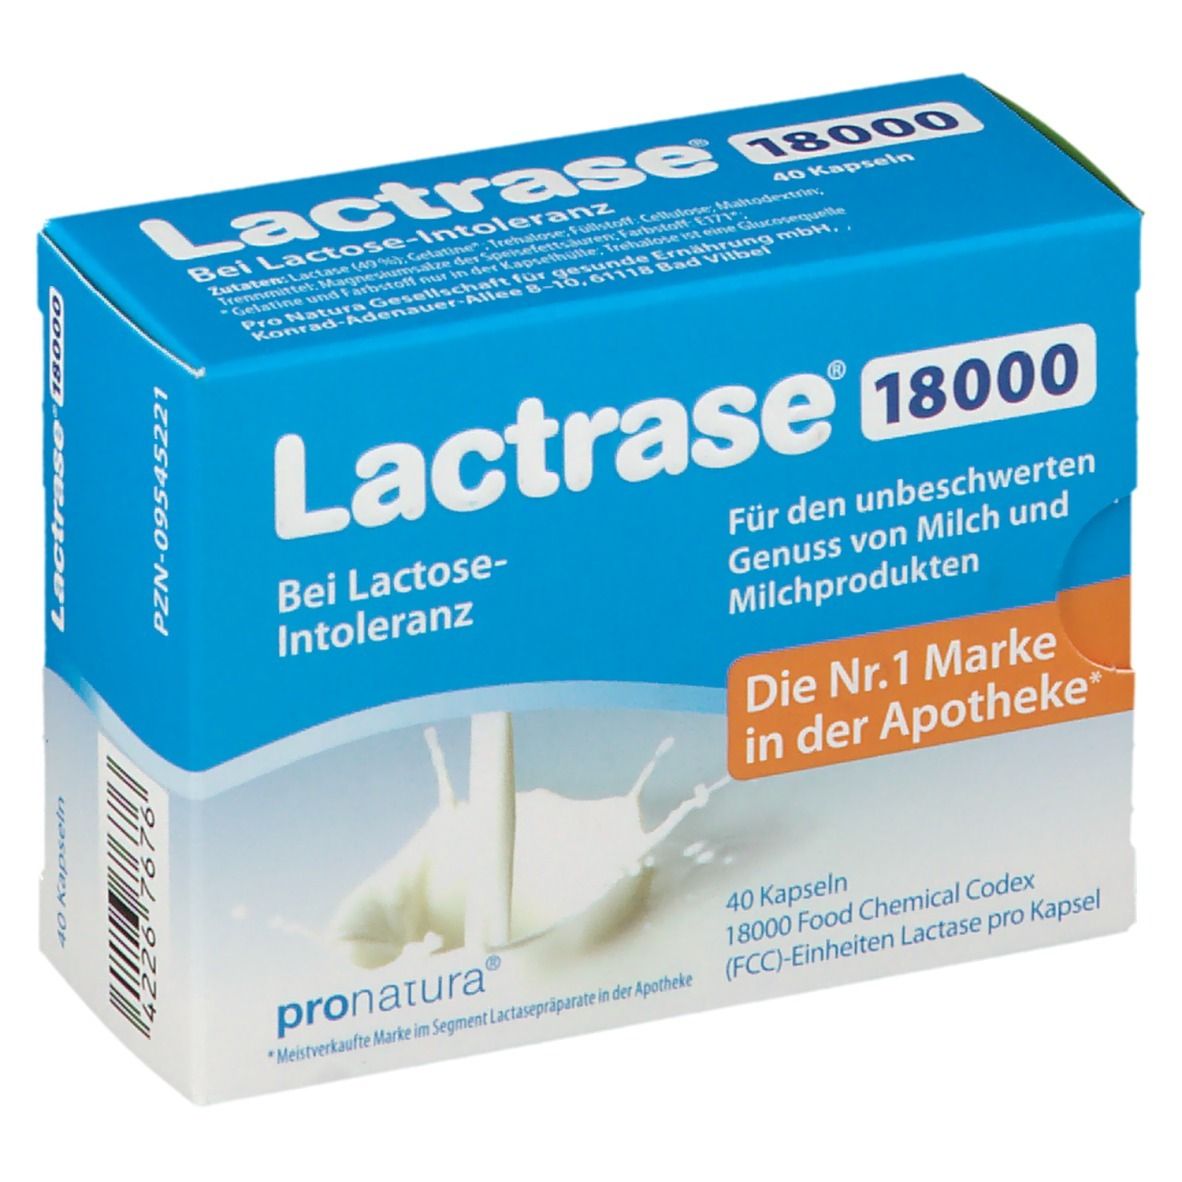 Lactrase® 18000 FCC Kapseln